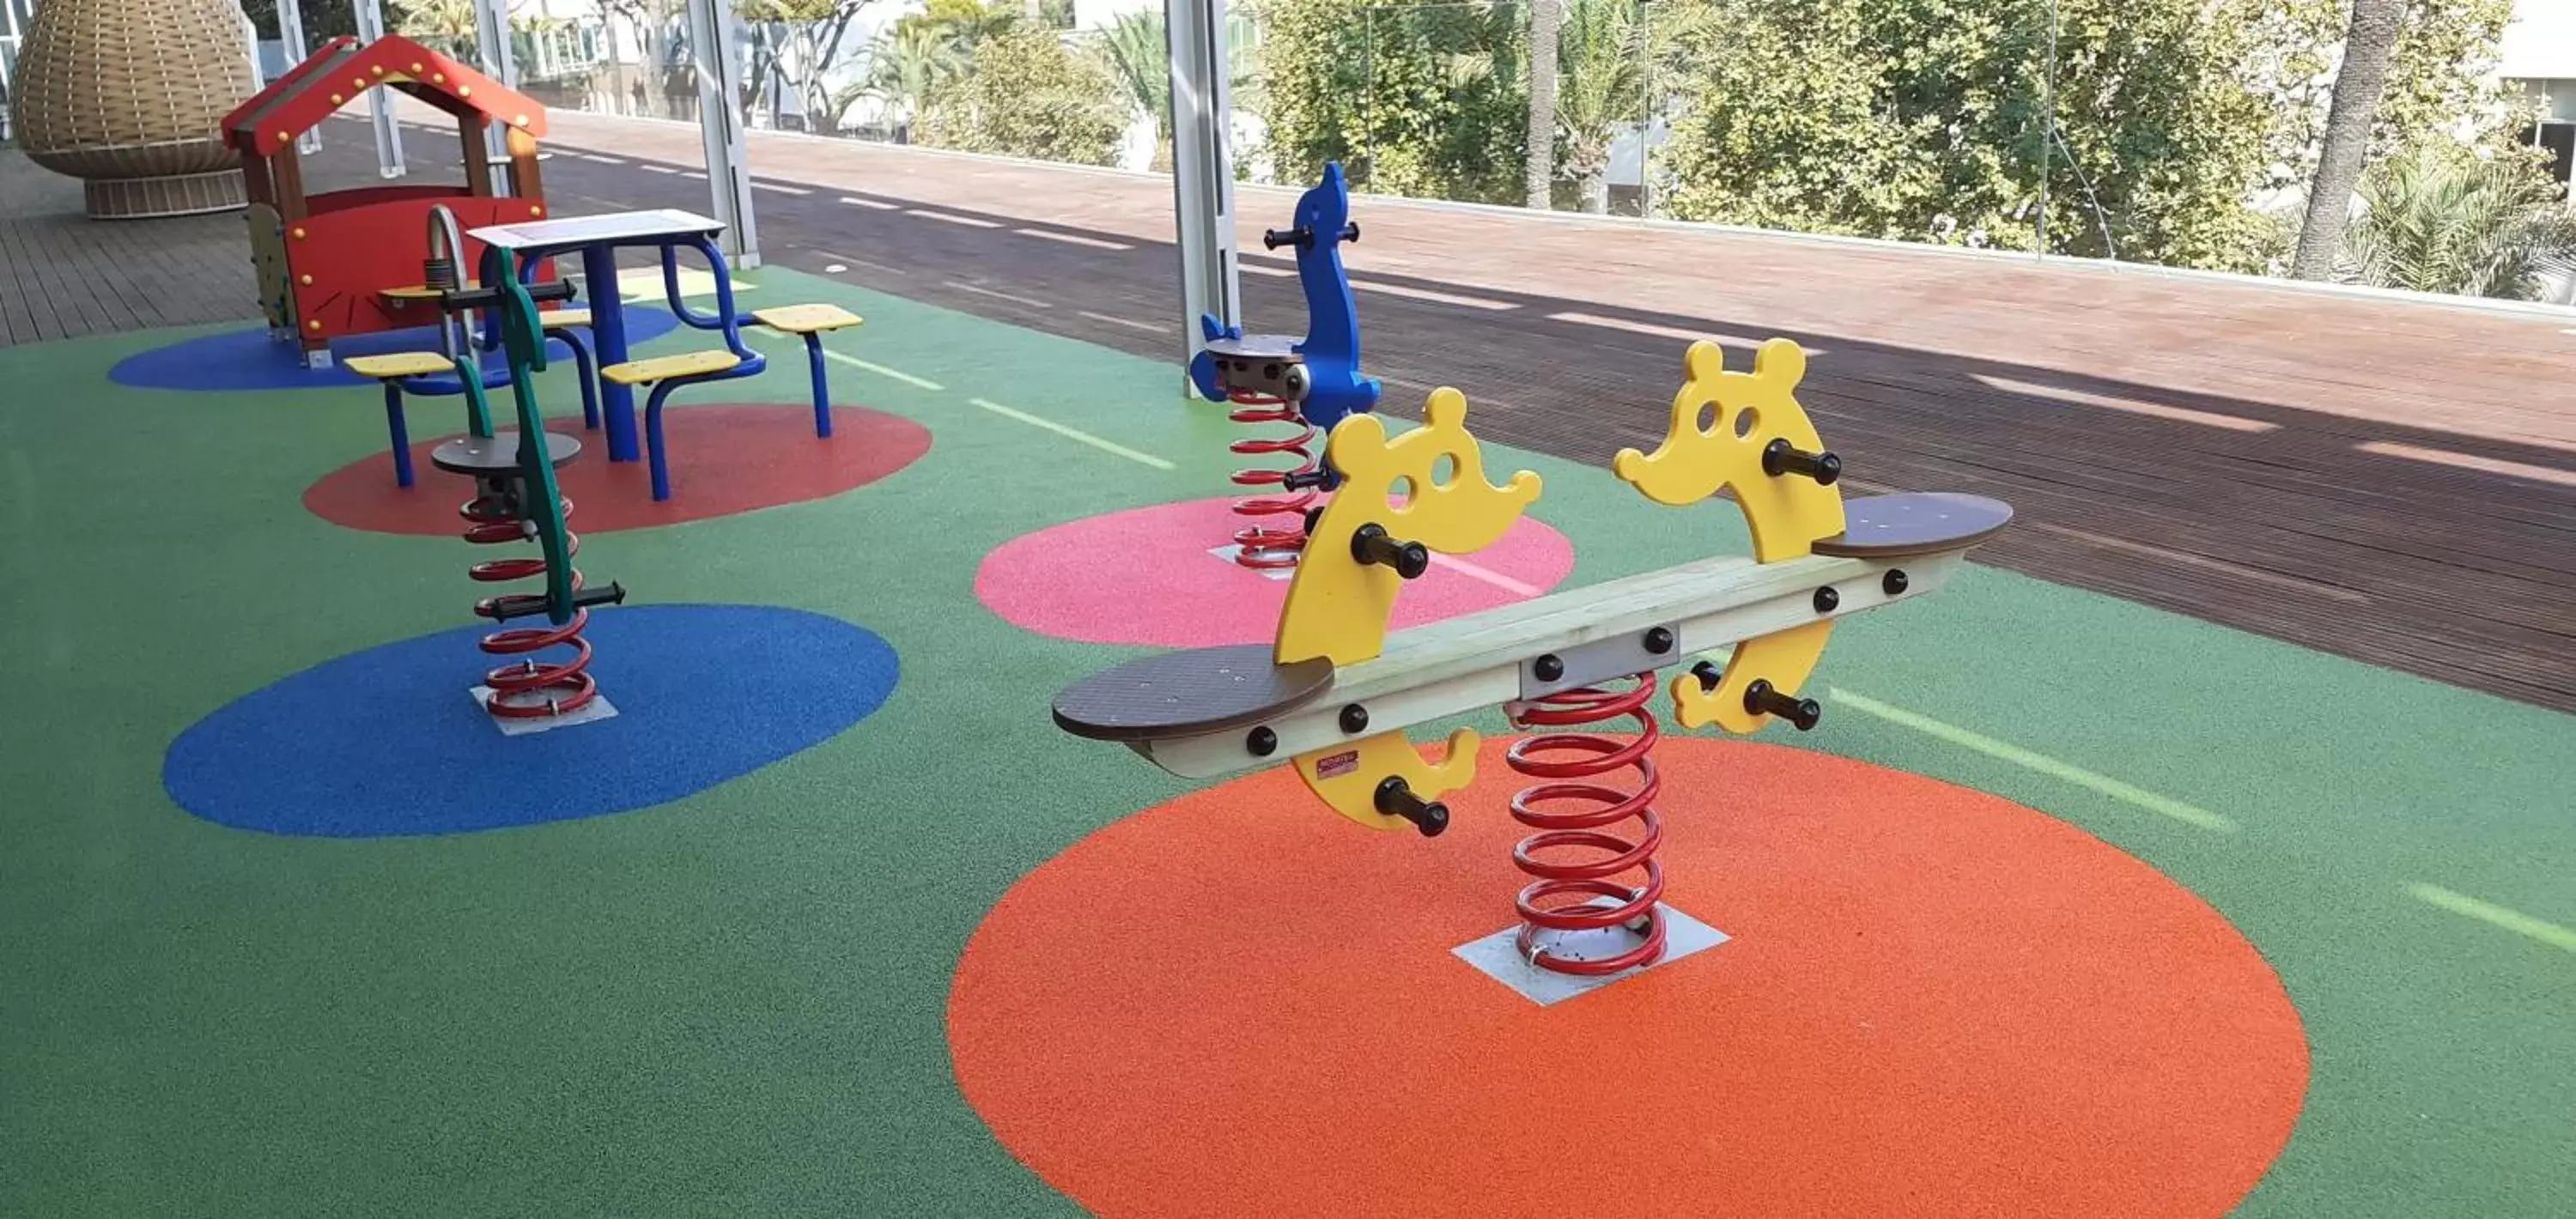 Children play ground, Fitness Center/Facilities in Parador de Cádiz